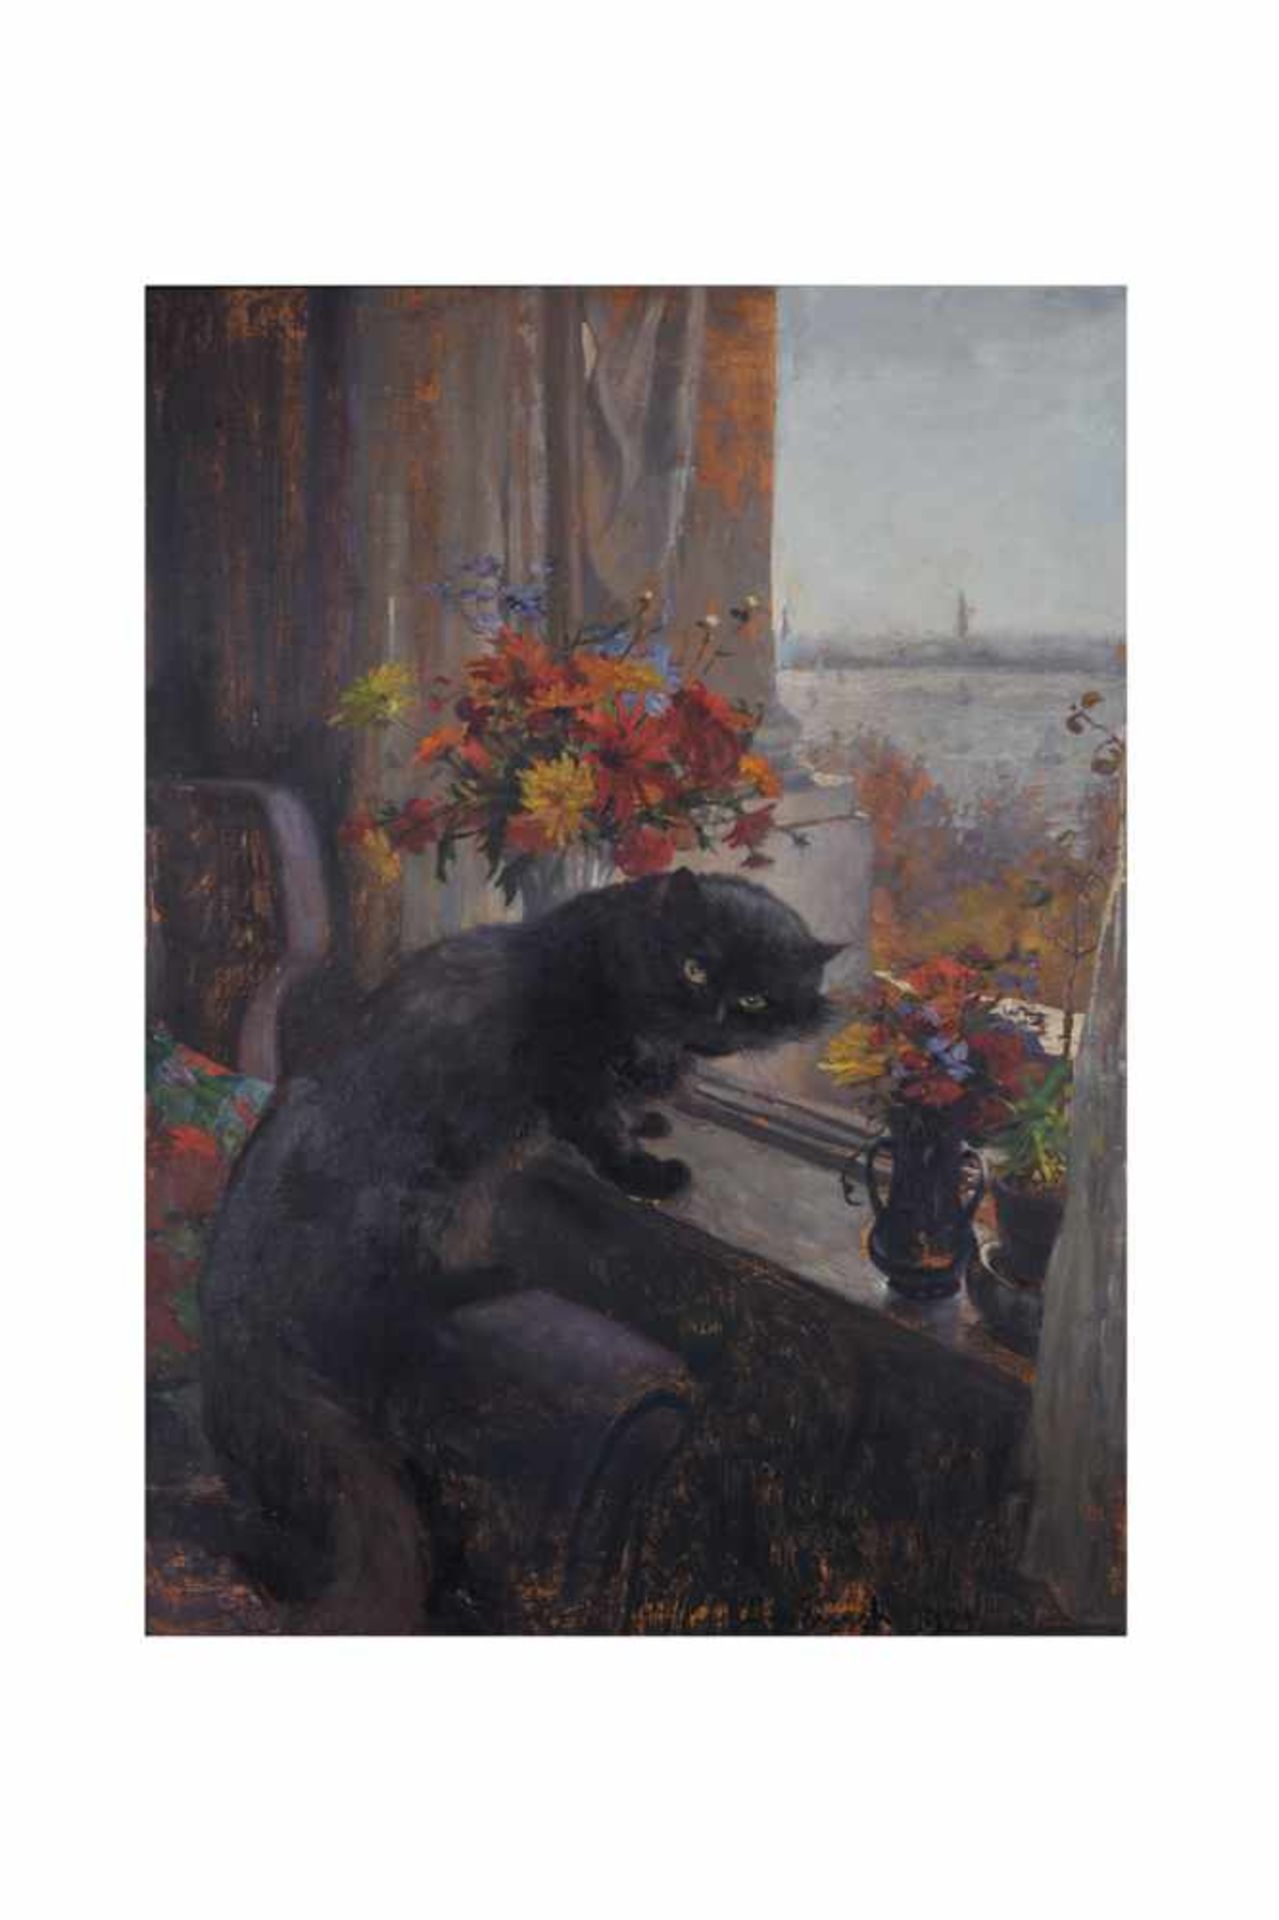 Fensterblick mit schwarzer Katze.Öl auf Karton, unten rechts signiert J. v. Ernst, datiert 1921,